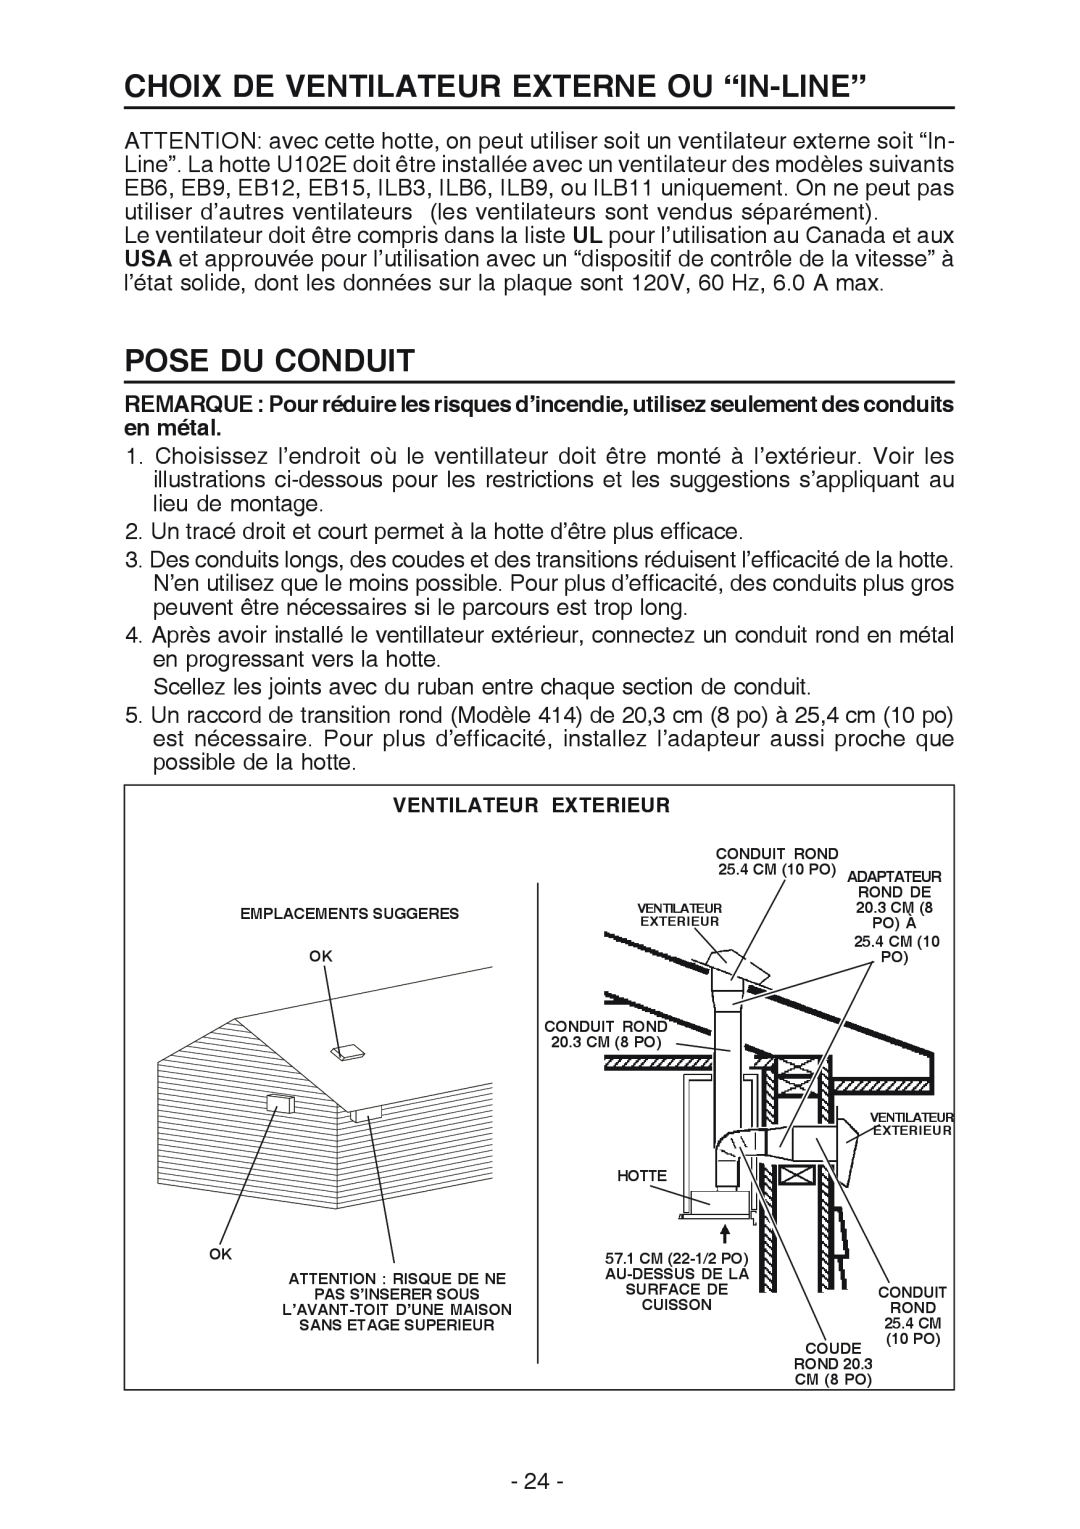 Best U102E manual Choix De Ventilateur Externe Ou “In-Line”, Pose Du Conduit 